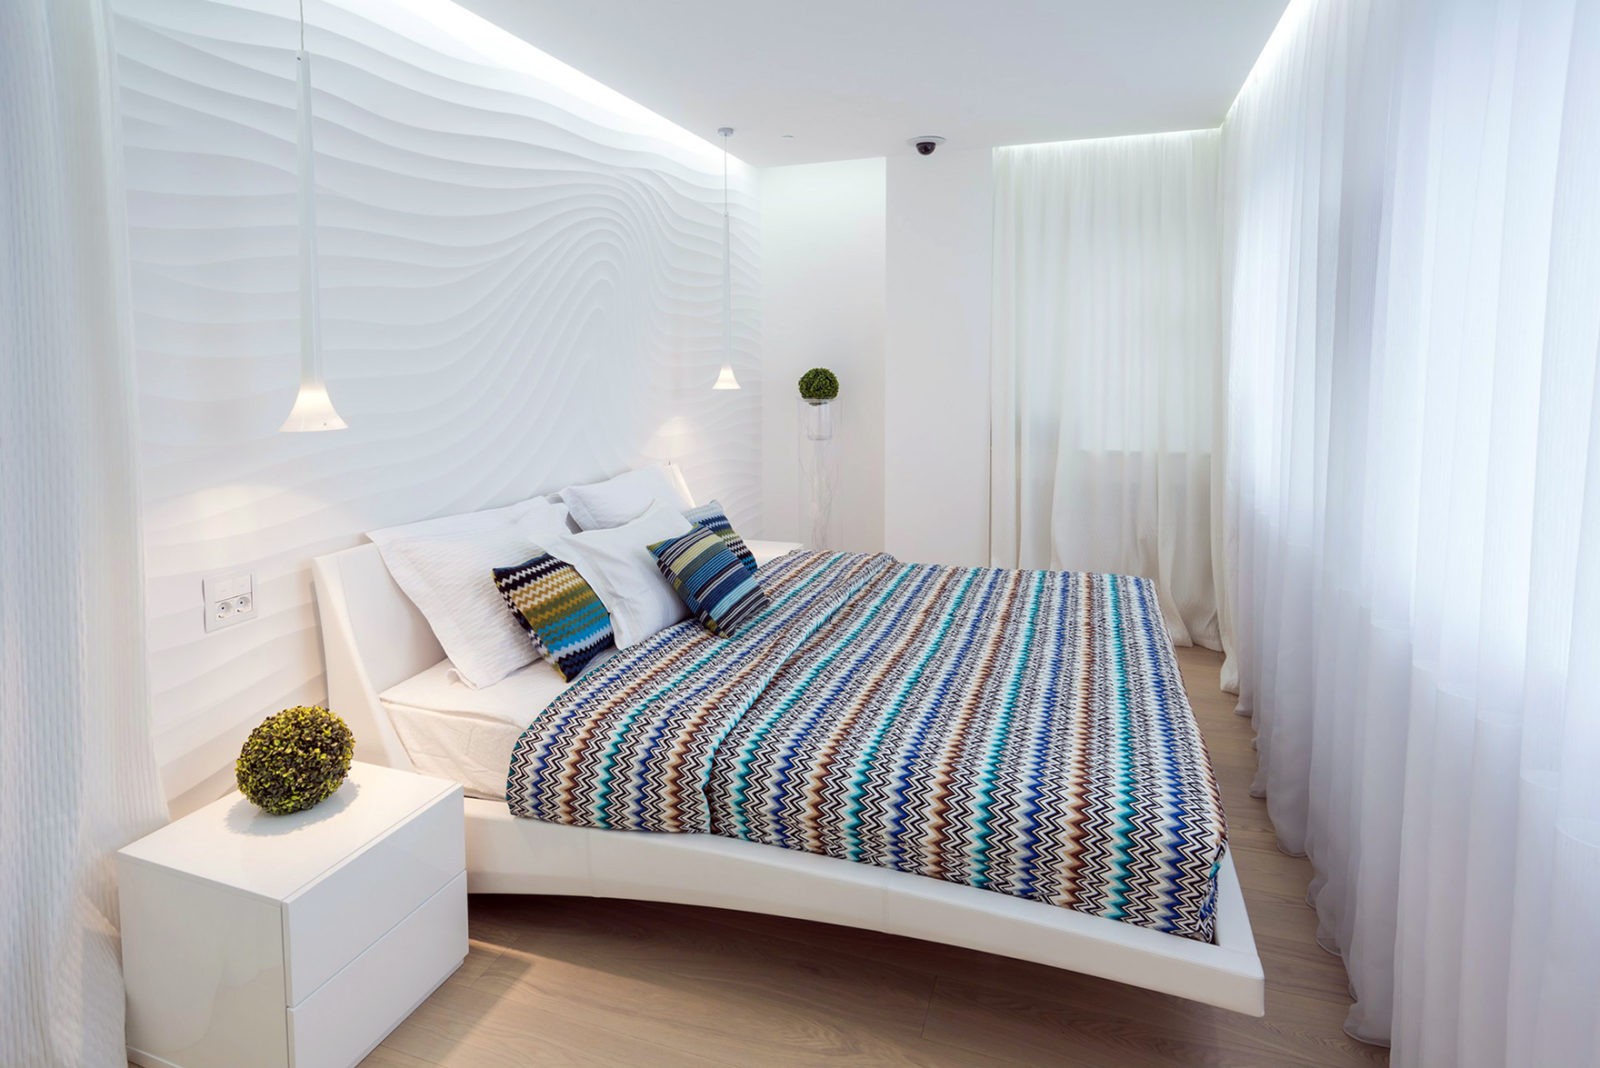 Спальня дизайн фото 12 кв м с двуспальной кроватью